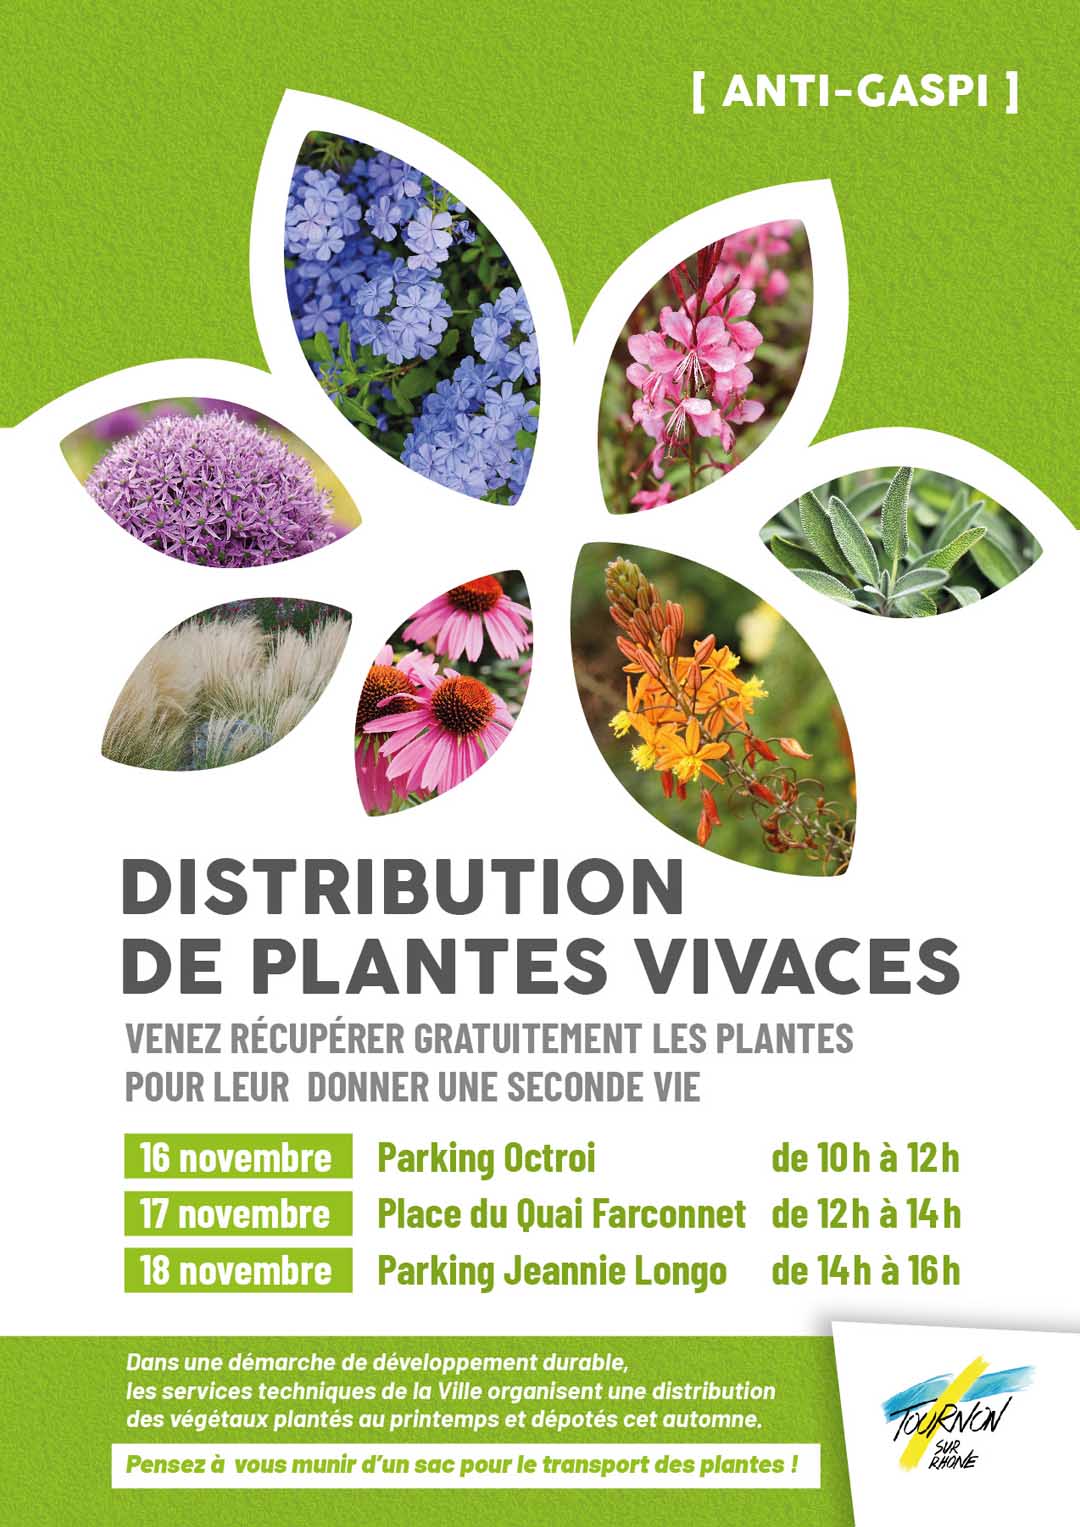 DISTRIBUTION DE PLANTES VIVACES